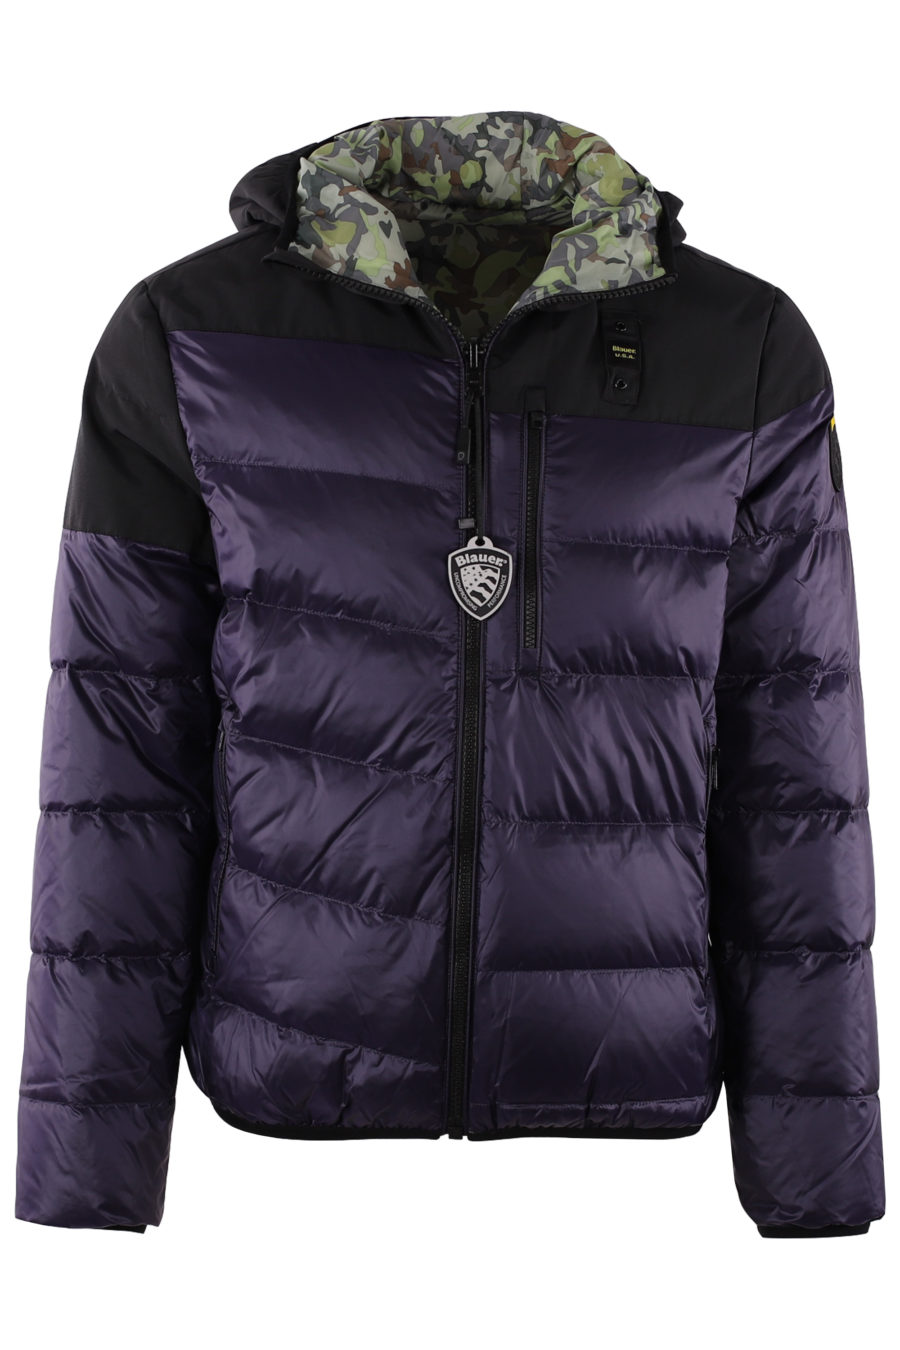 Reversible dark purple reversible jacket - IMG 9421